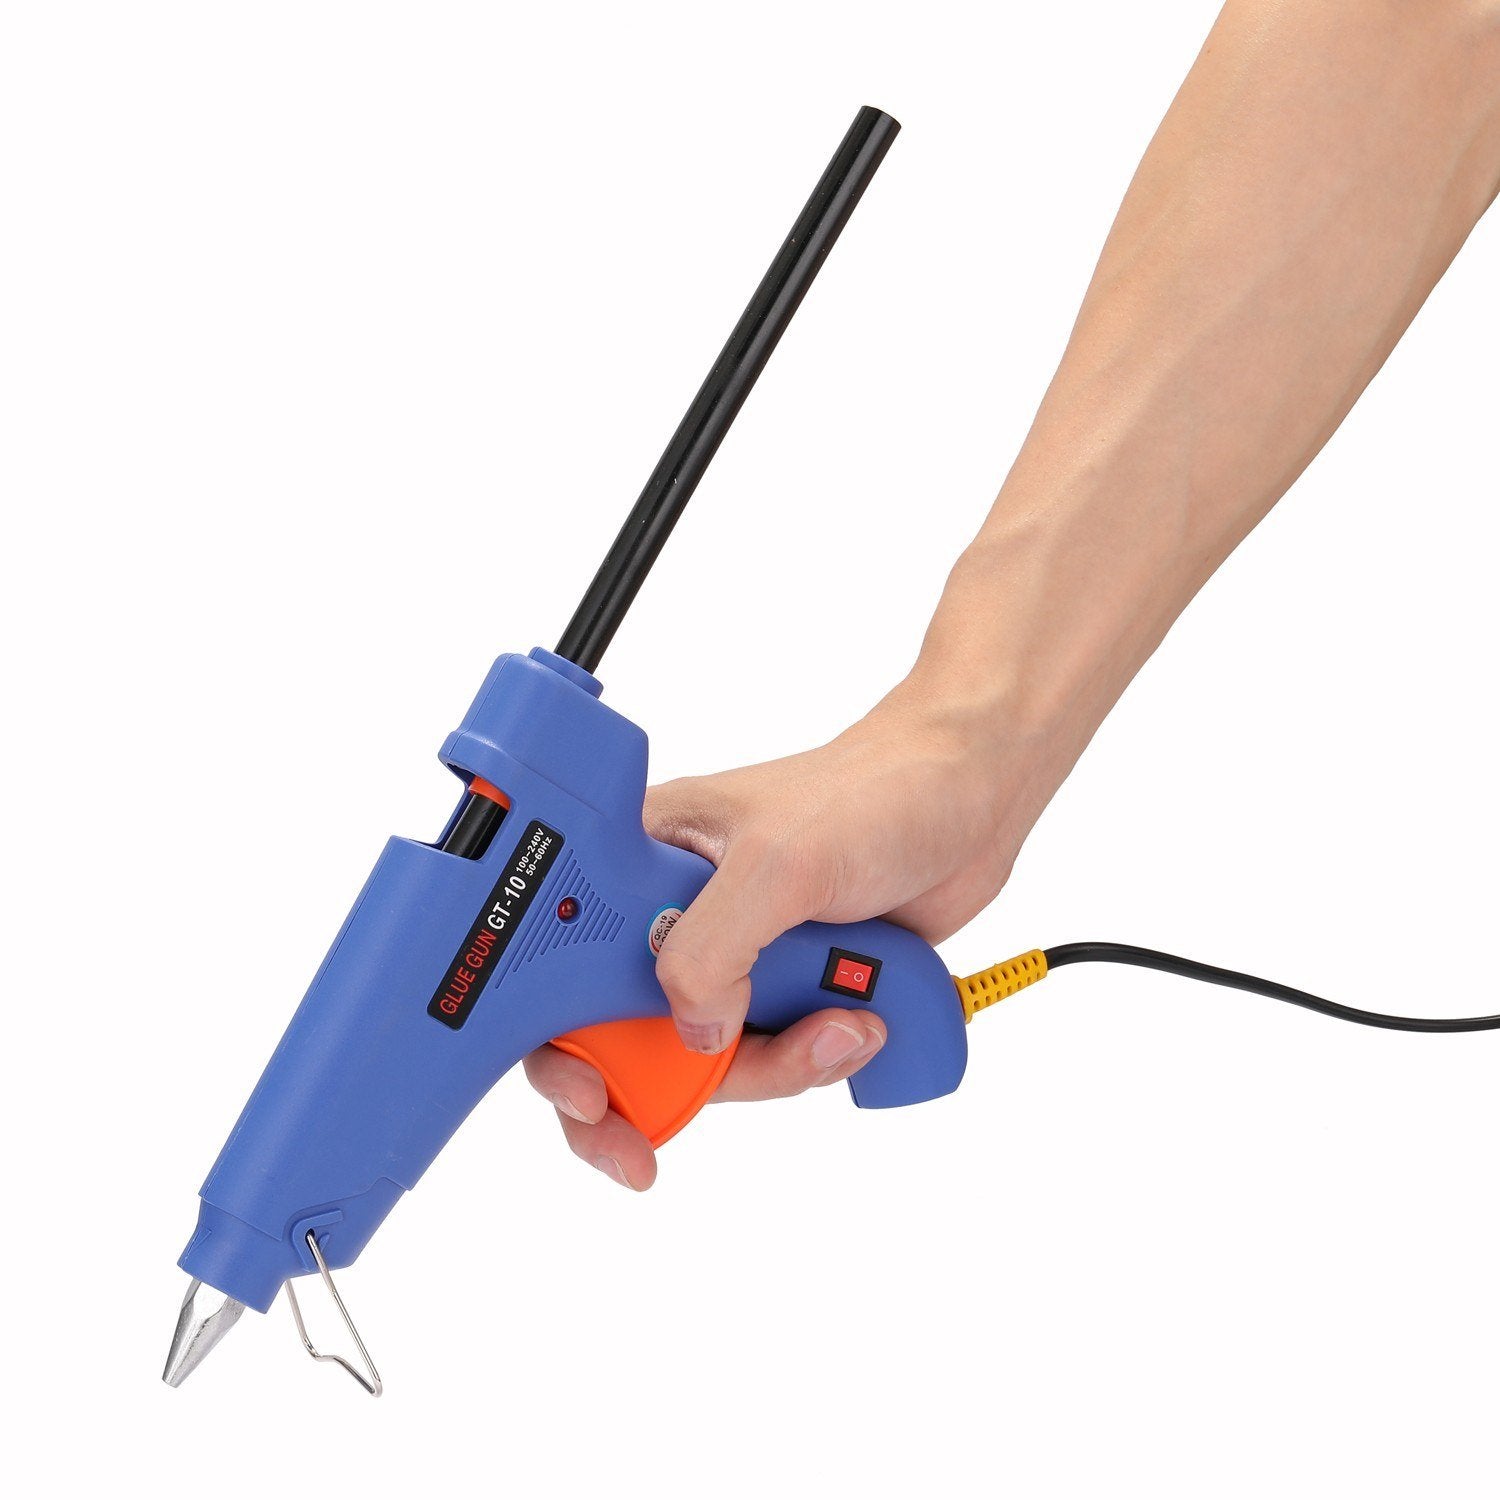 Paintless Dent Repairinging Tools Kit Adjustable Dent Lifter Repairinging Tool Kit Pack 45